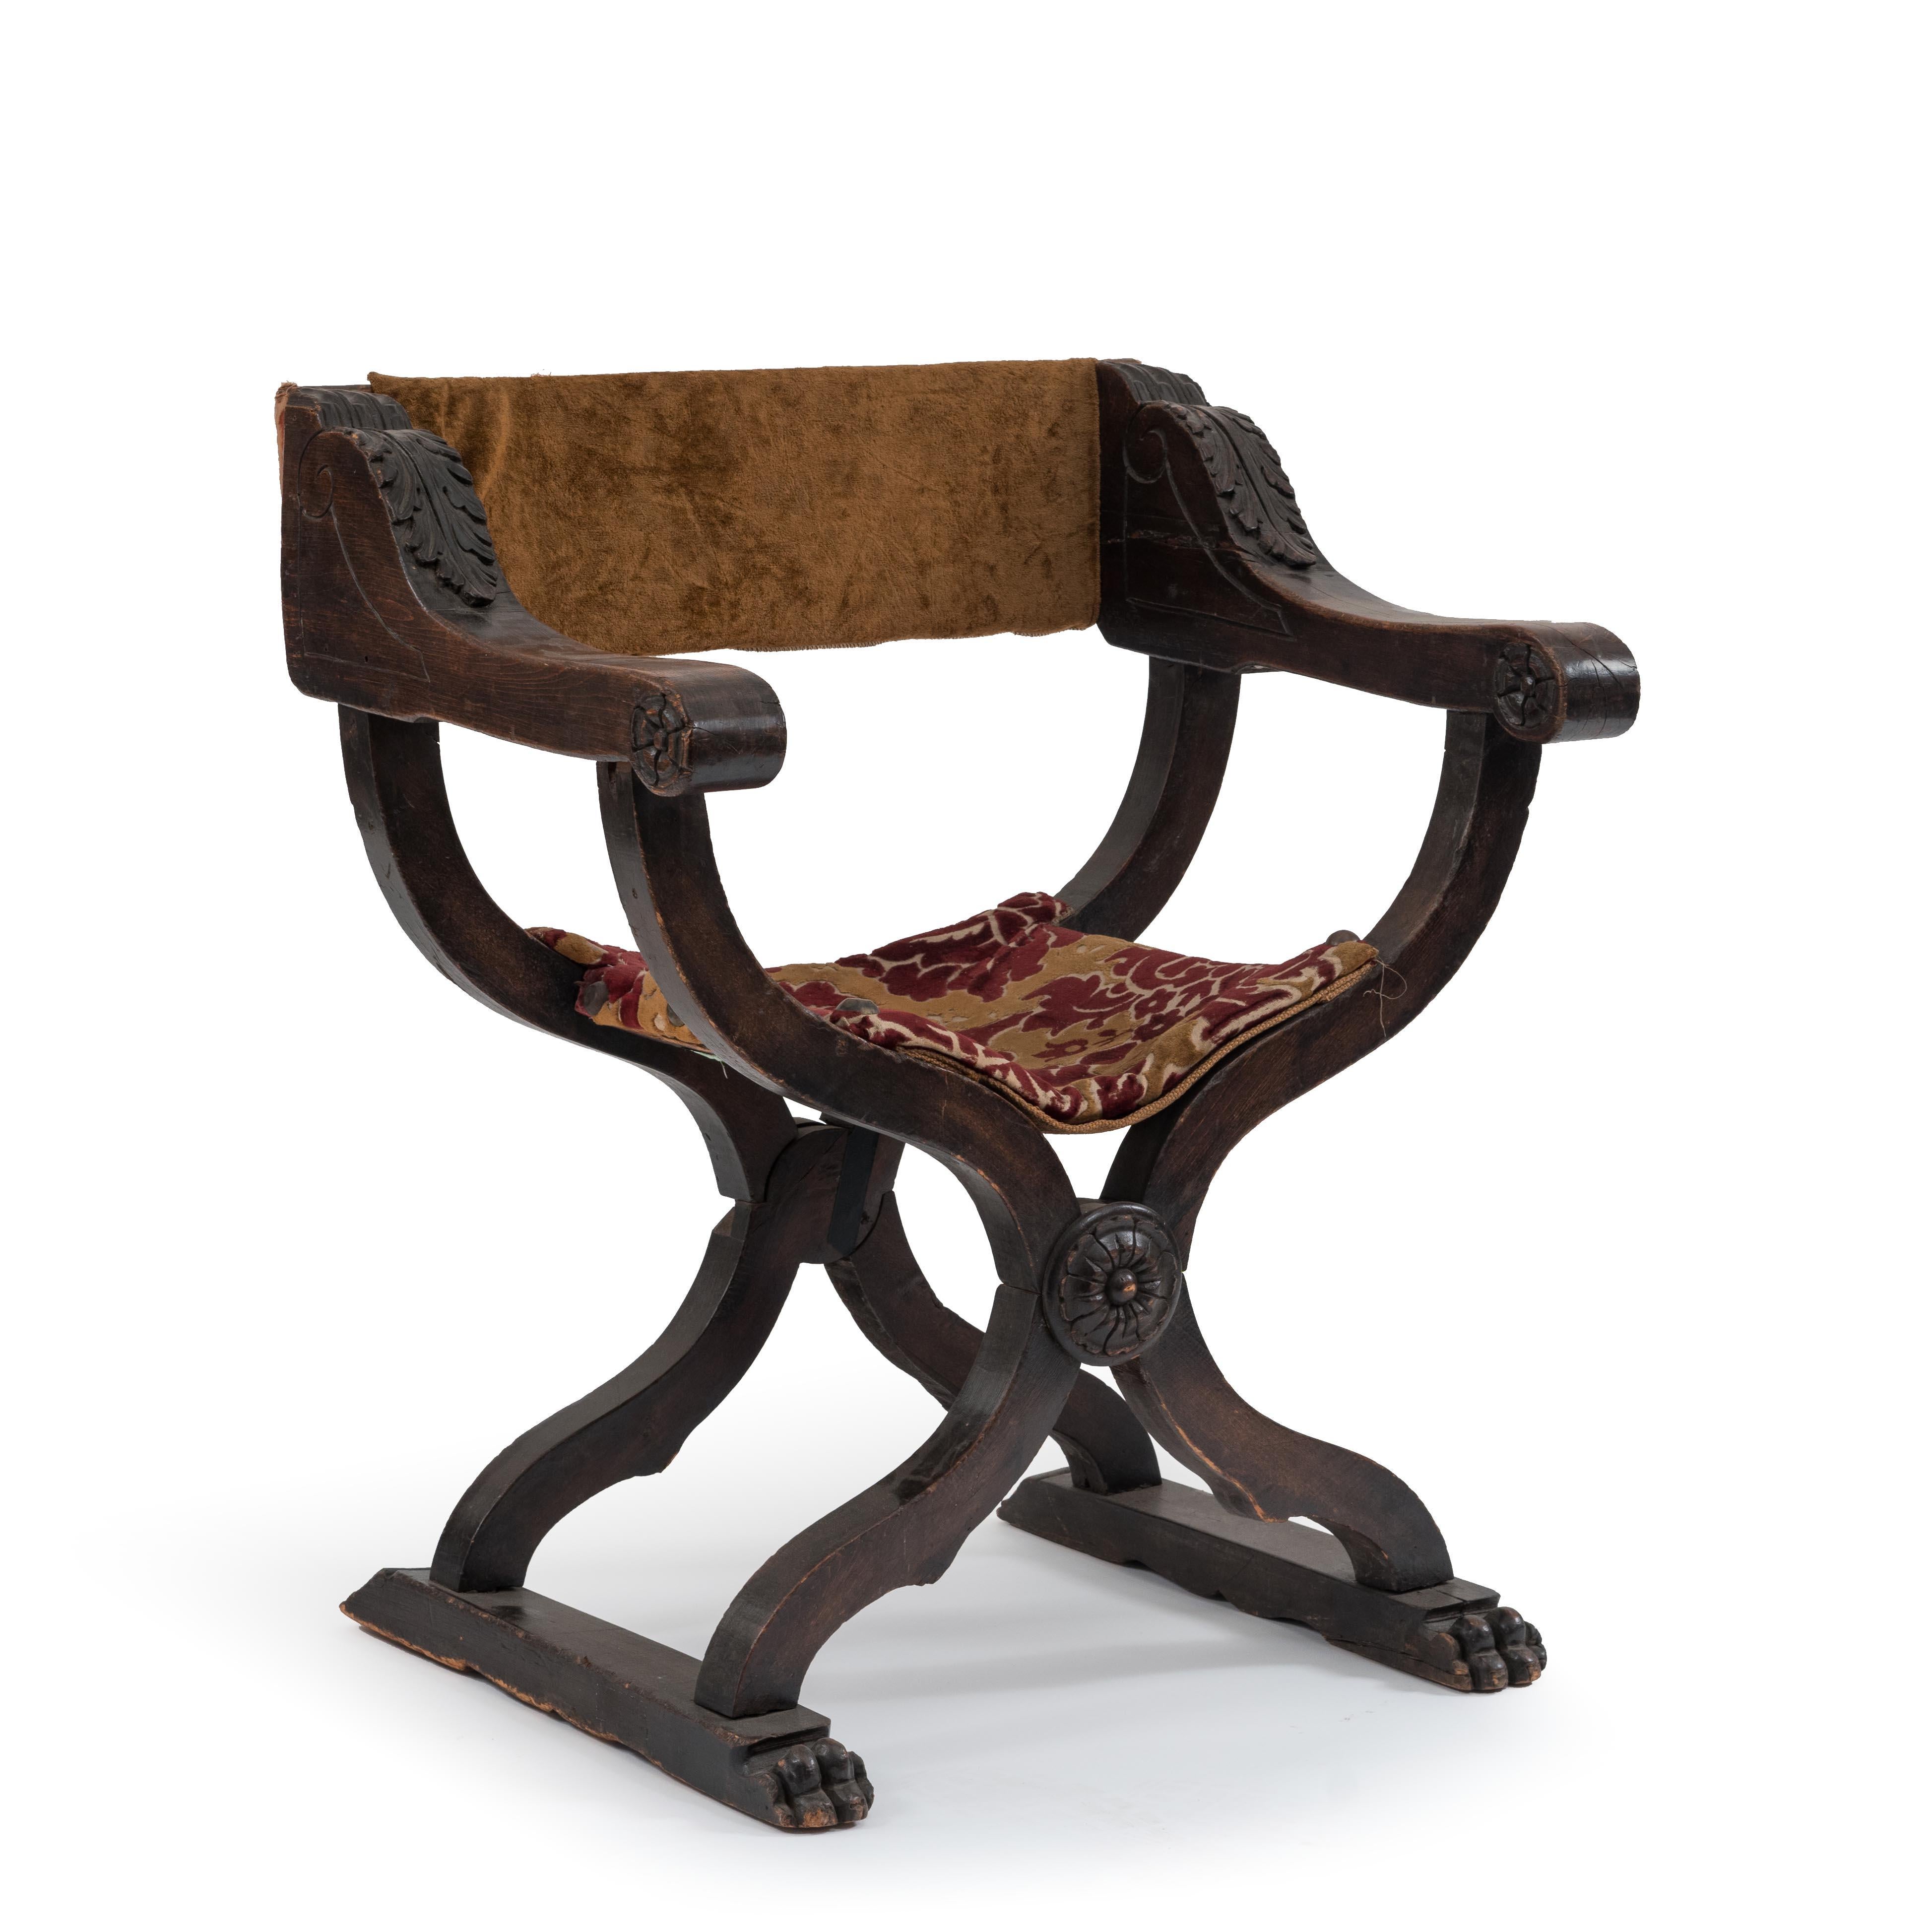 Italienischer Renaissance-Savanarola-Sessel aus Nussbaum mit roter Samtpolsterung und geschnitzter Front (19. Jh.).
  